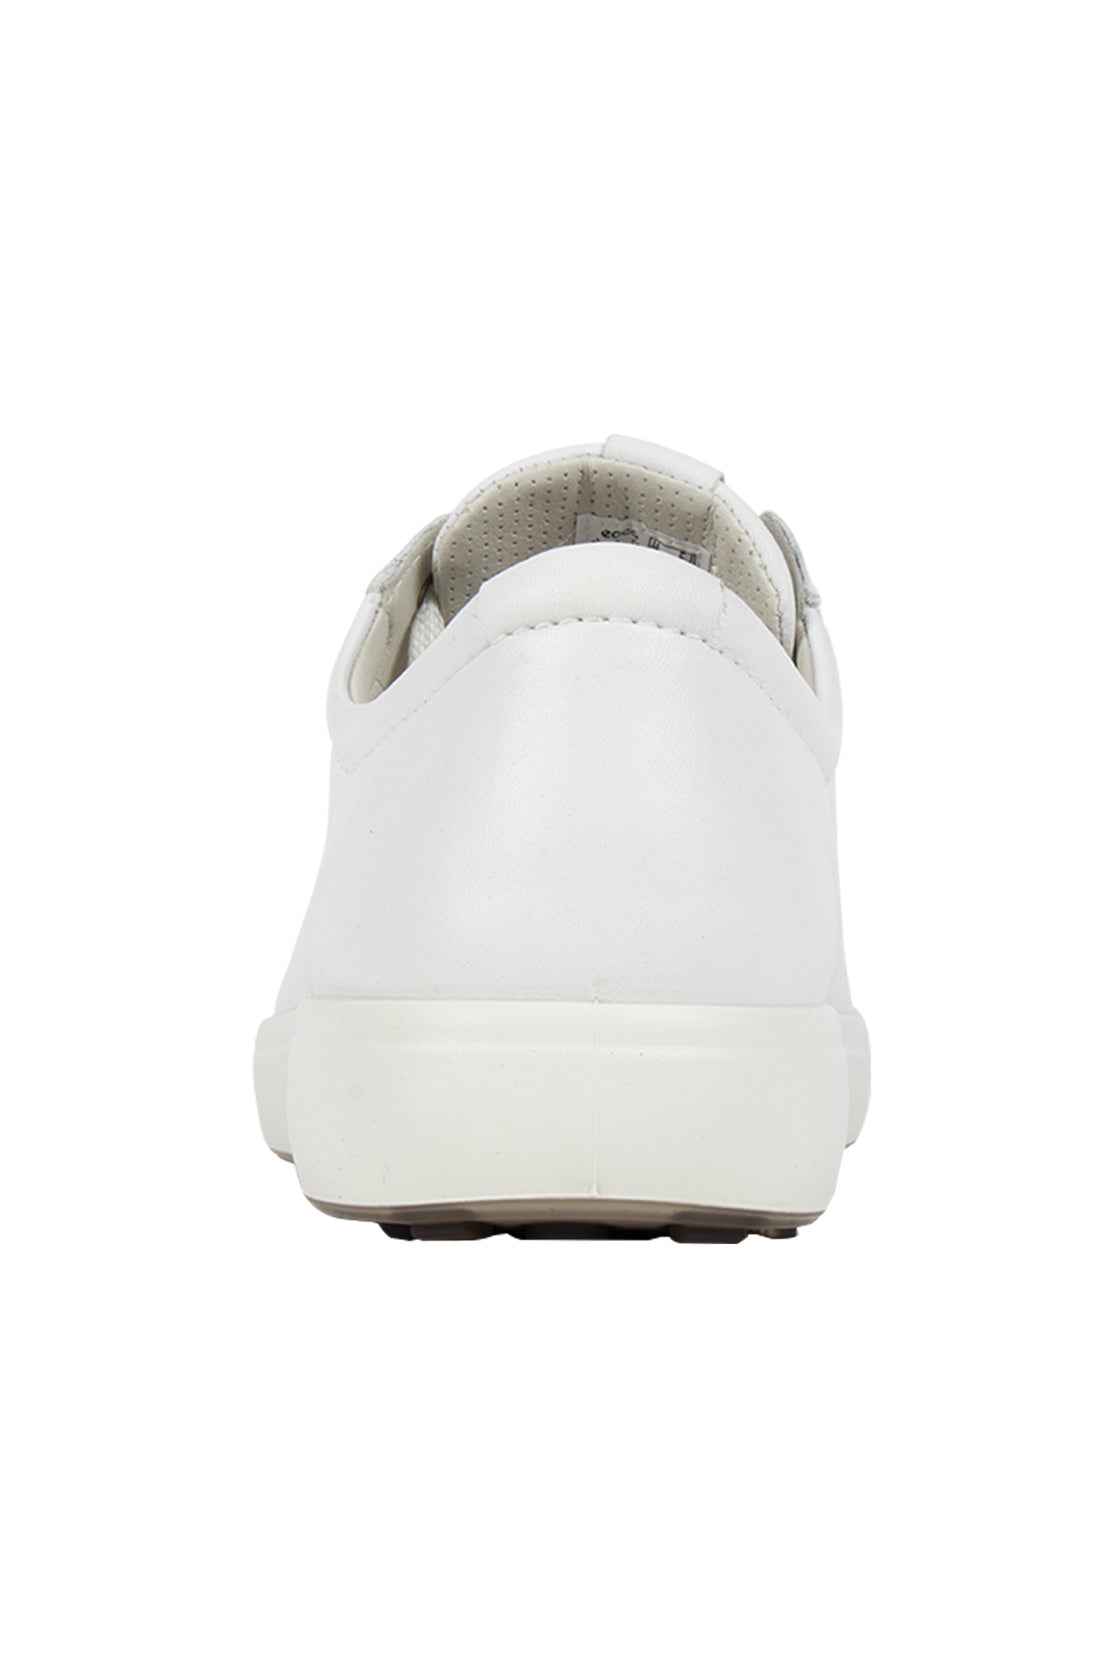 ECCO Soft 7 Sneaker White